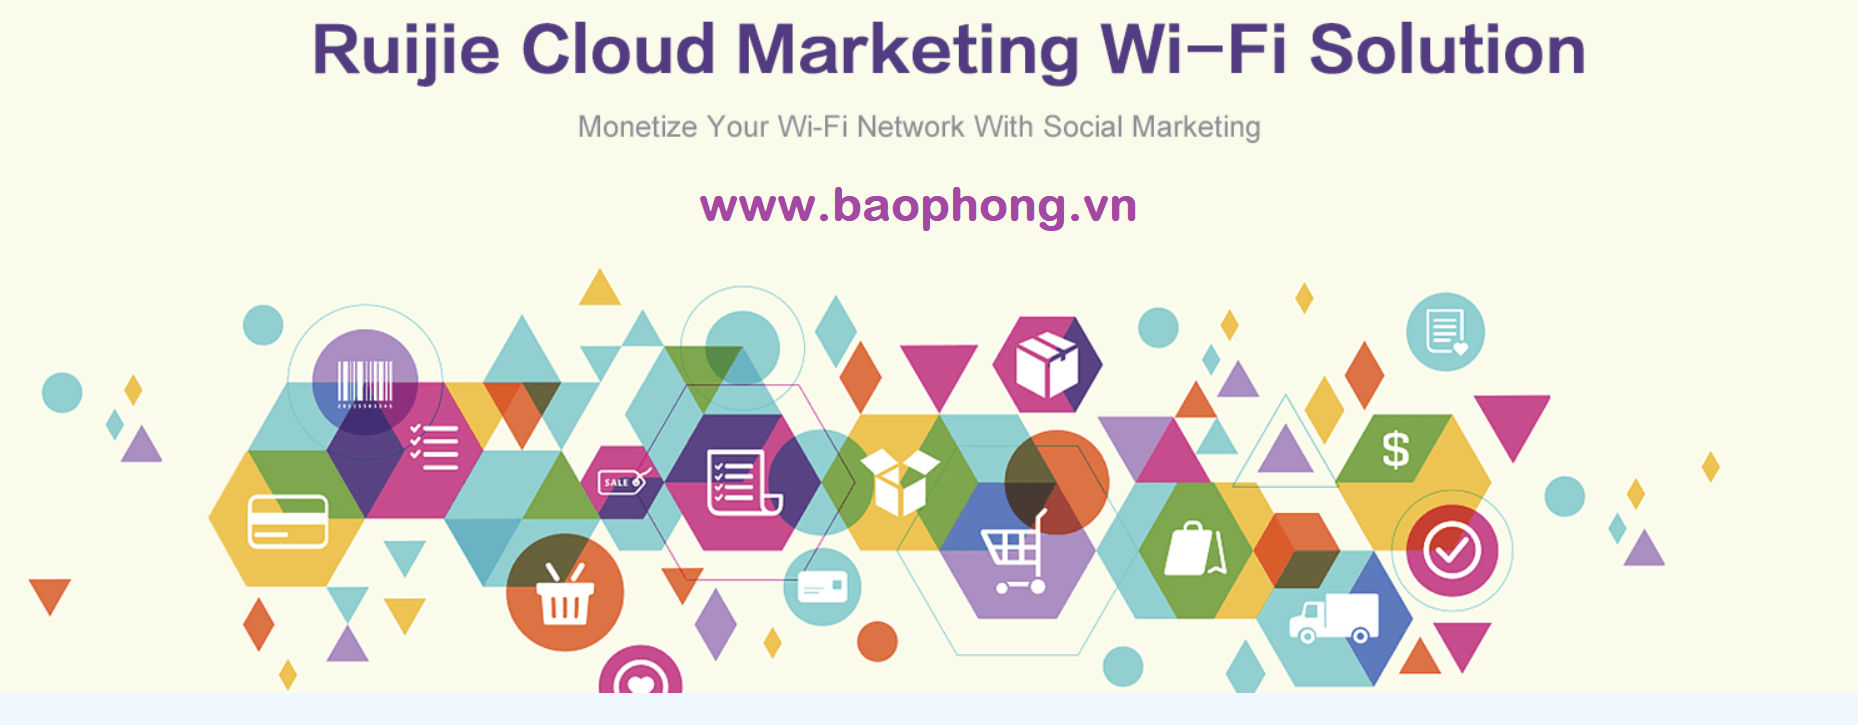 Giai Phap Wifi Marketing Cua Ruijie